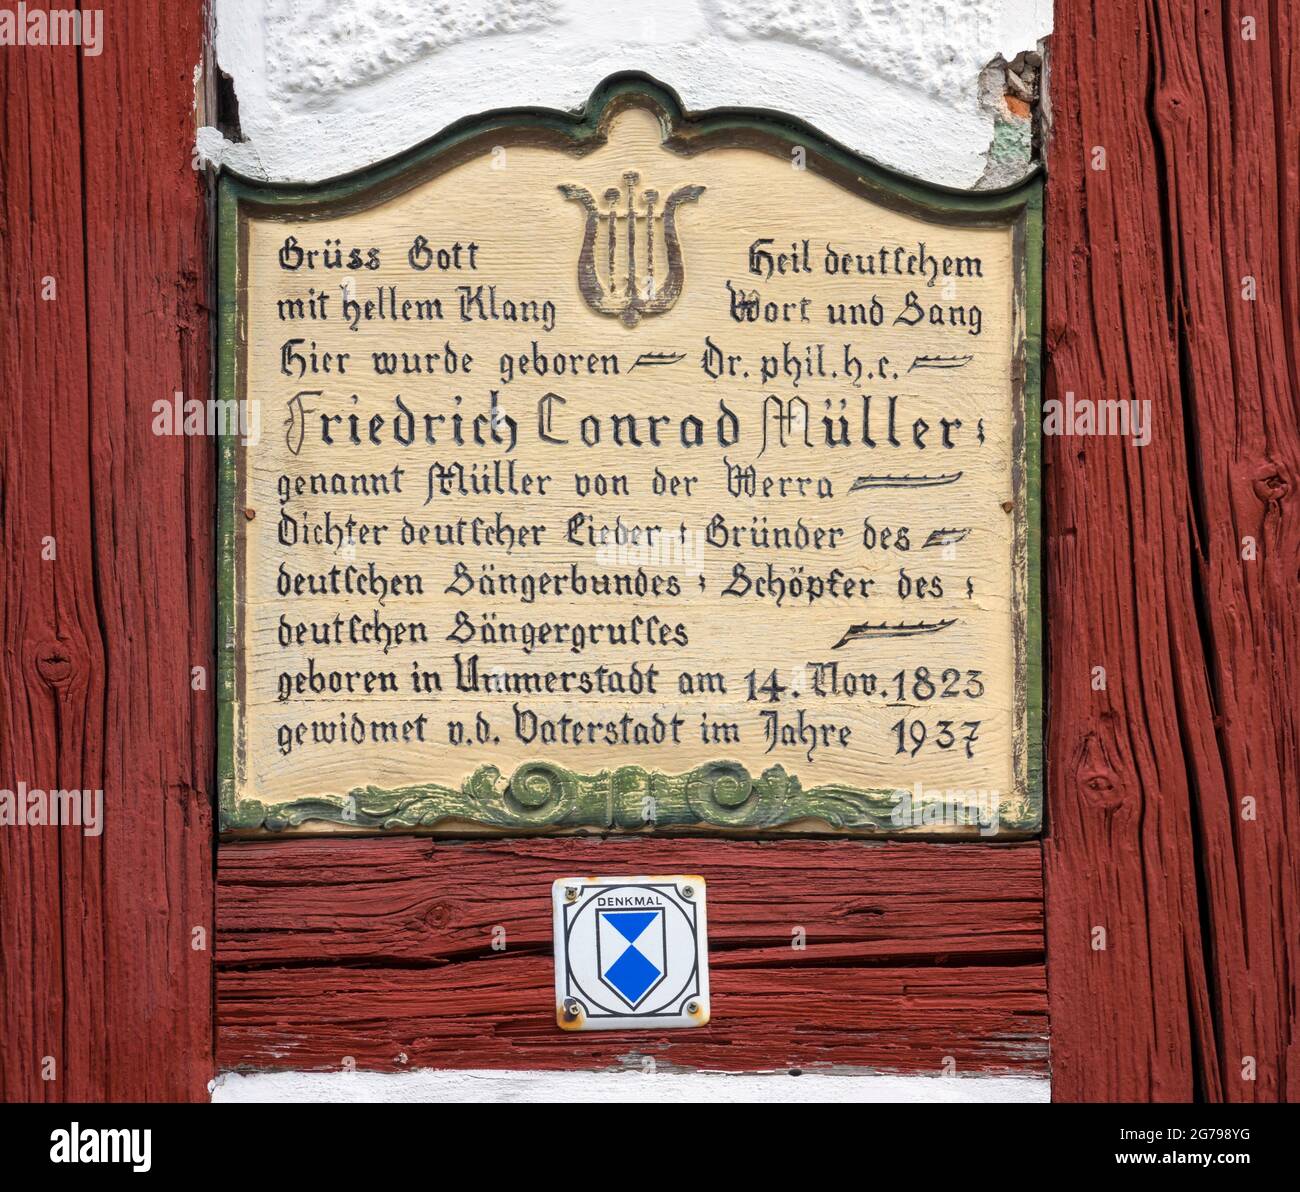 Ummerstadt est (2019) la plus petite ville de Thuringe. La vieille ville historique d'Ummerstadt, avec ses nombreuses maisons à colombages, est un bâtiment classé. La place du marché à l'extrémité supérieure de laquelle est le lieu de naissance de Friedrich Konrad Müller vaut particulièrement la peine d'être vu. Müller, qui s'est appelé « üller von der Werra », est l'auteur de nombreux poèmes et chansons patriotiques. Banque D'Images